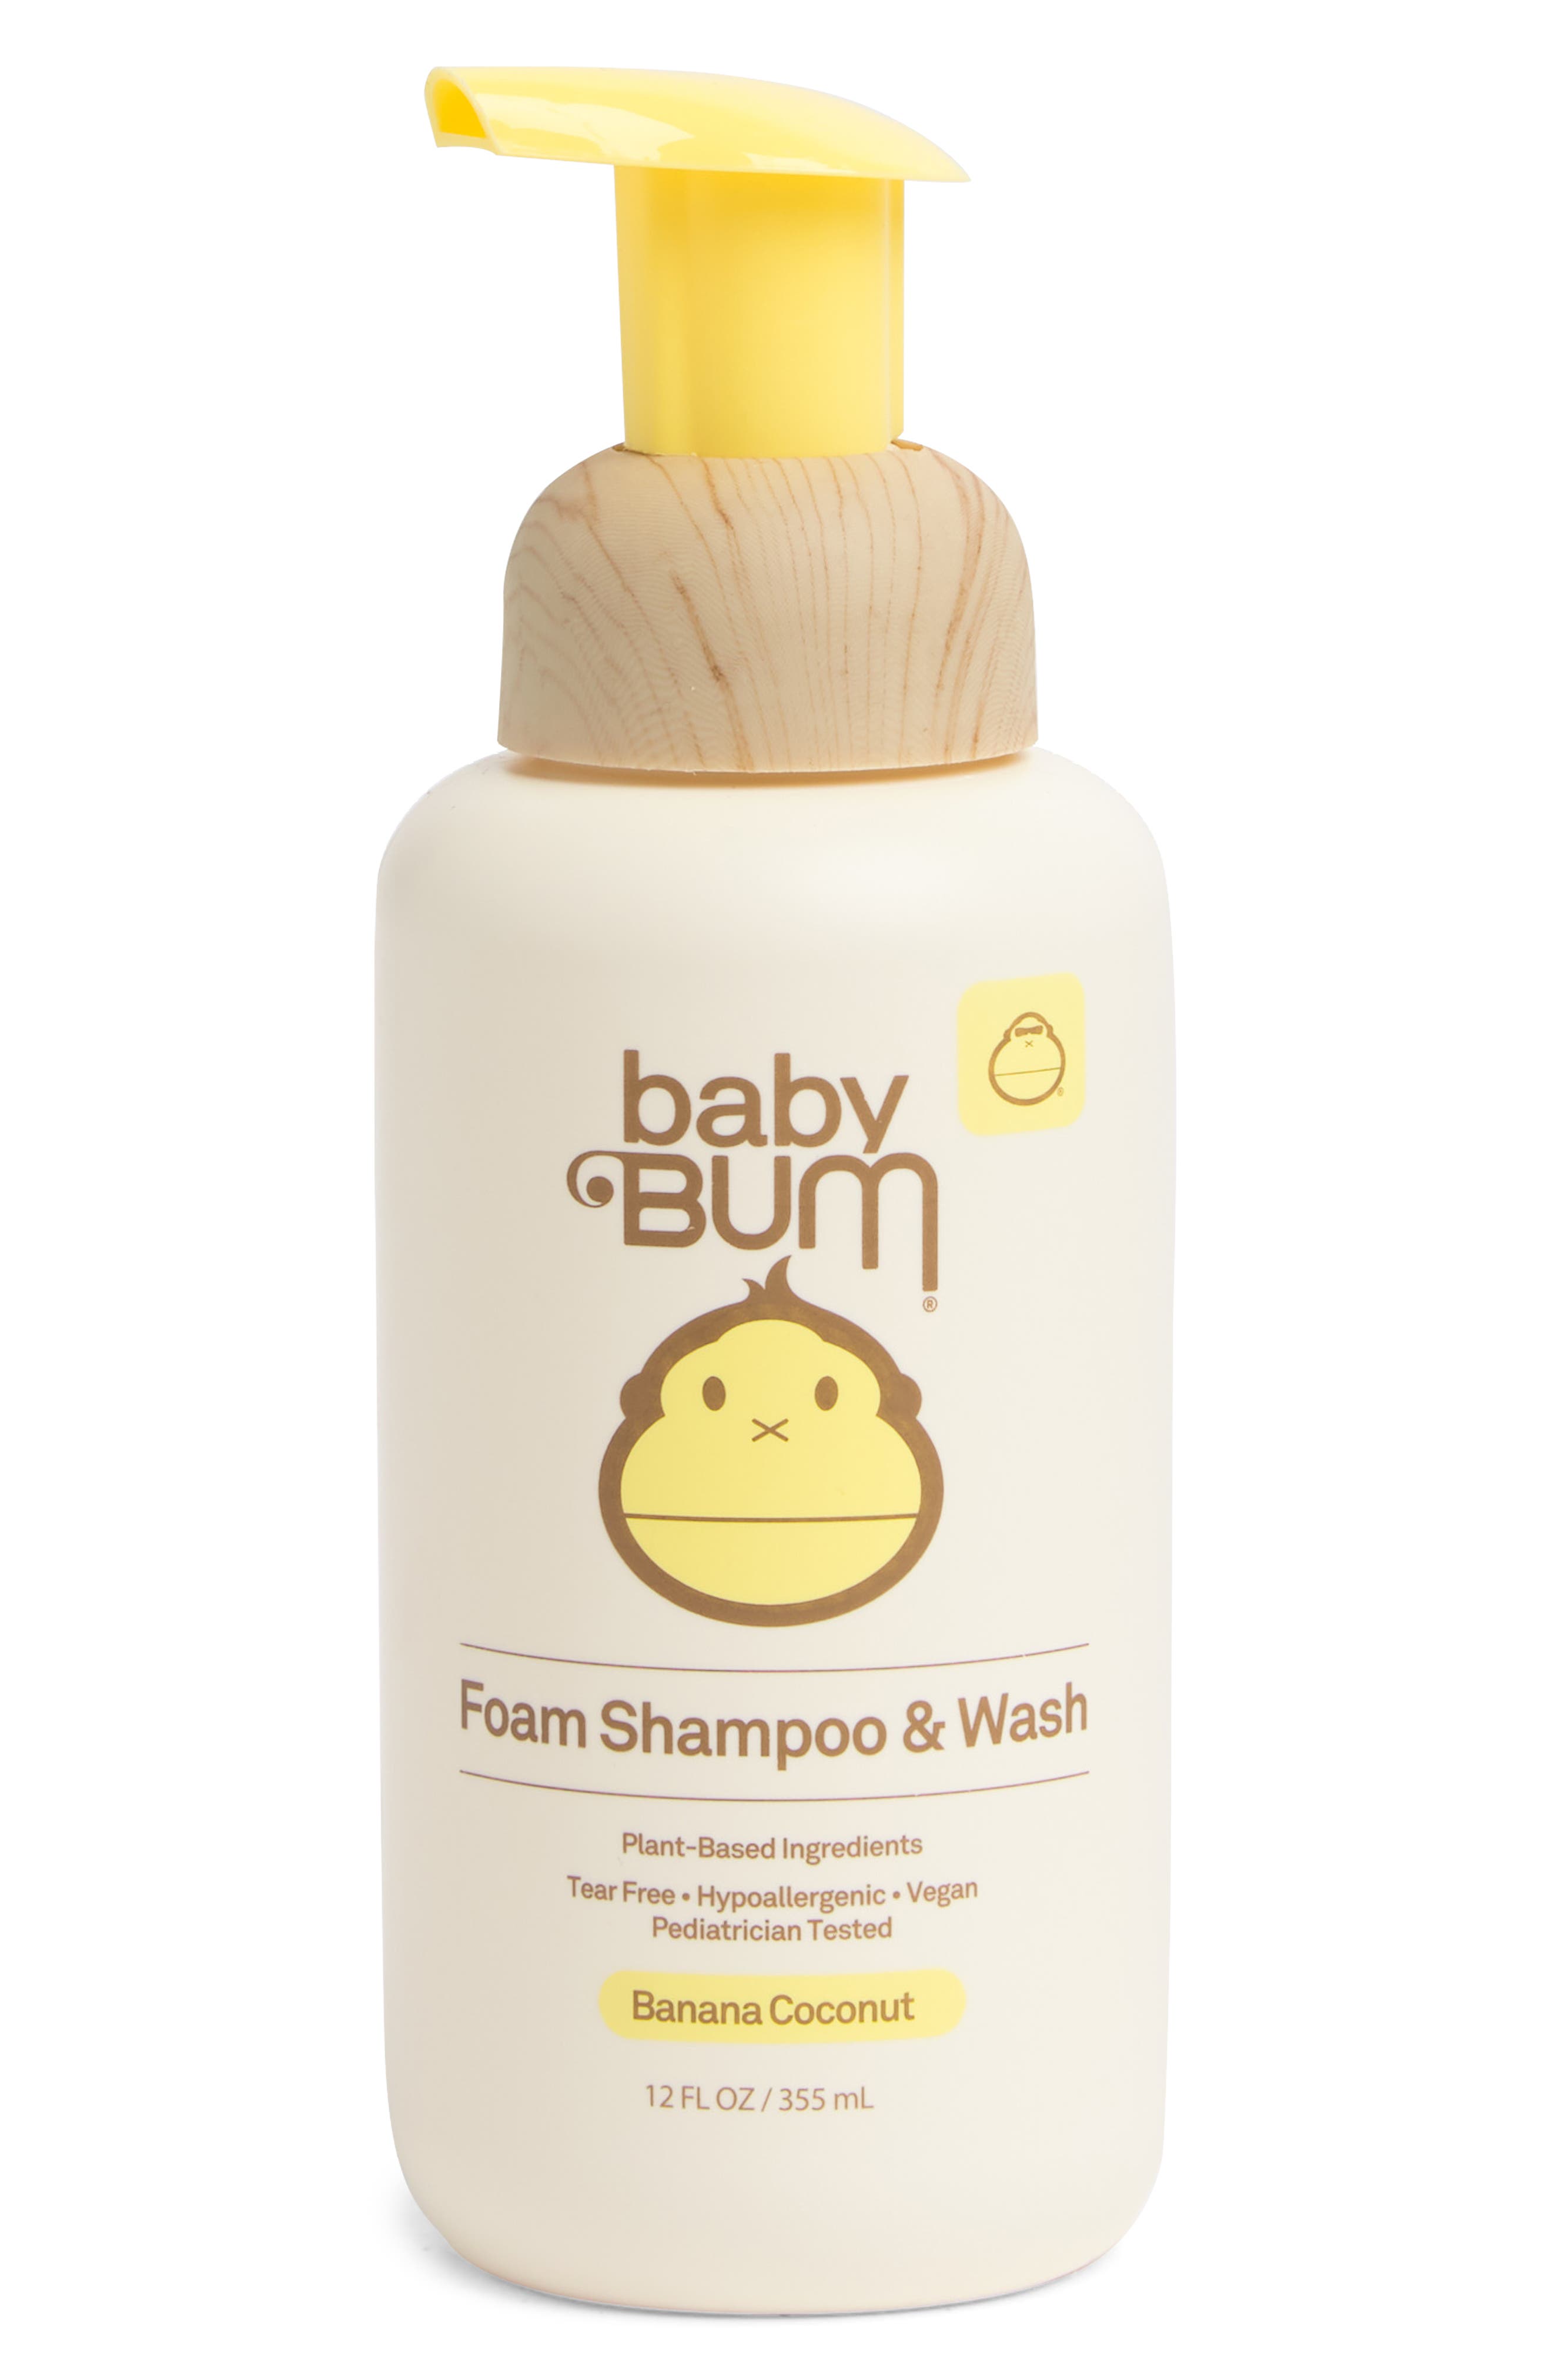 Banana Coconut Foam Shampoo & Wash USD $9.99 Value Sun Bum